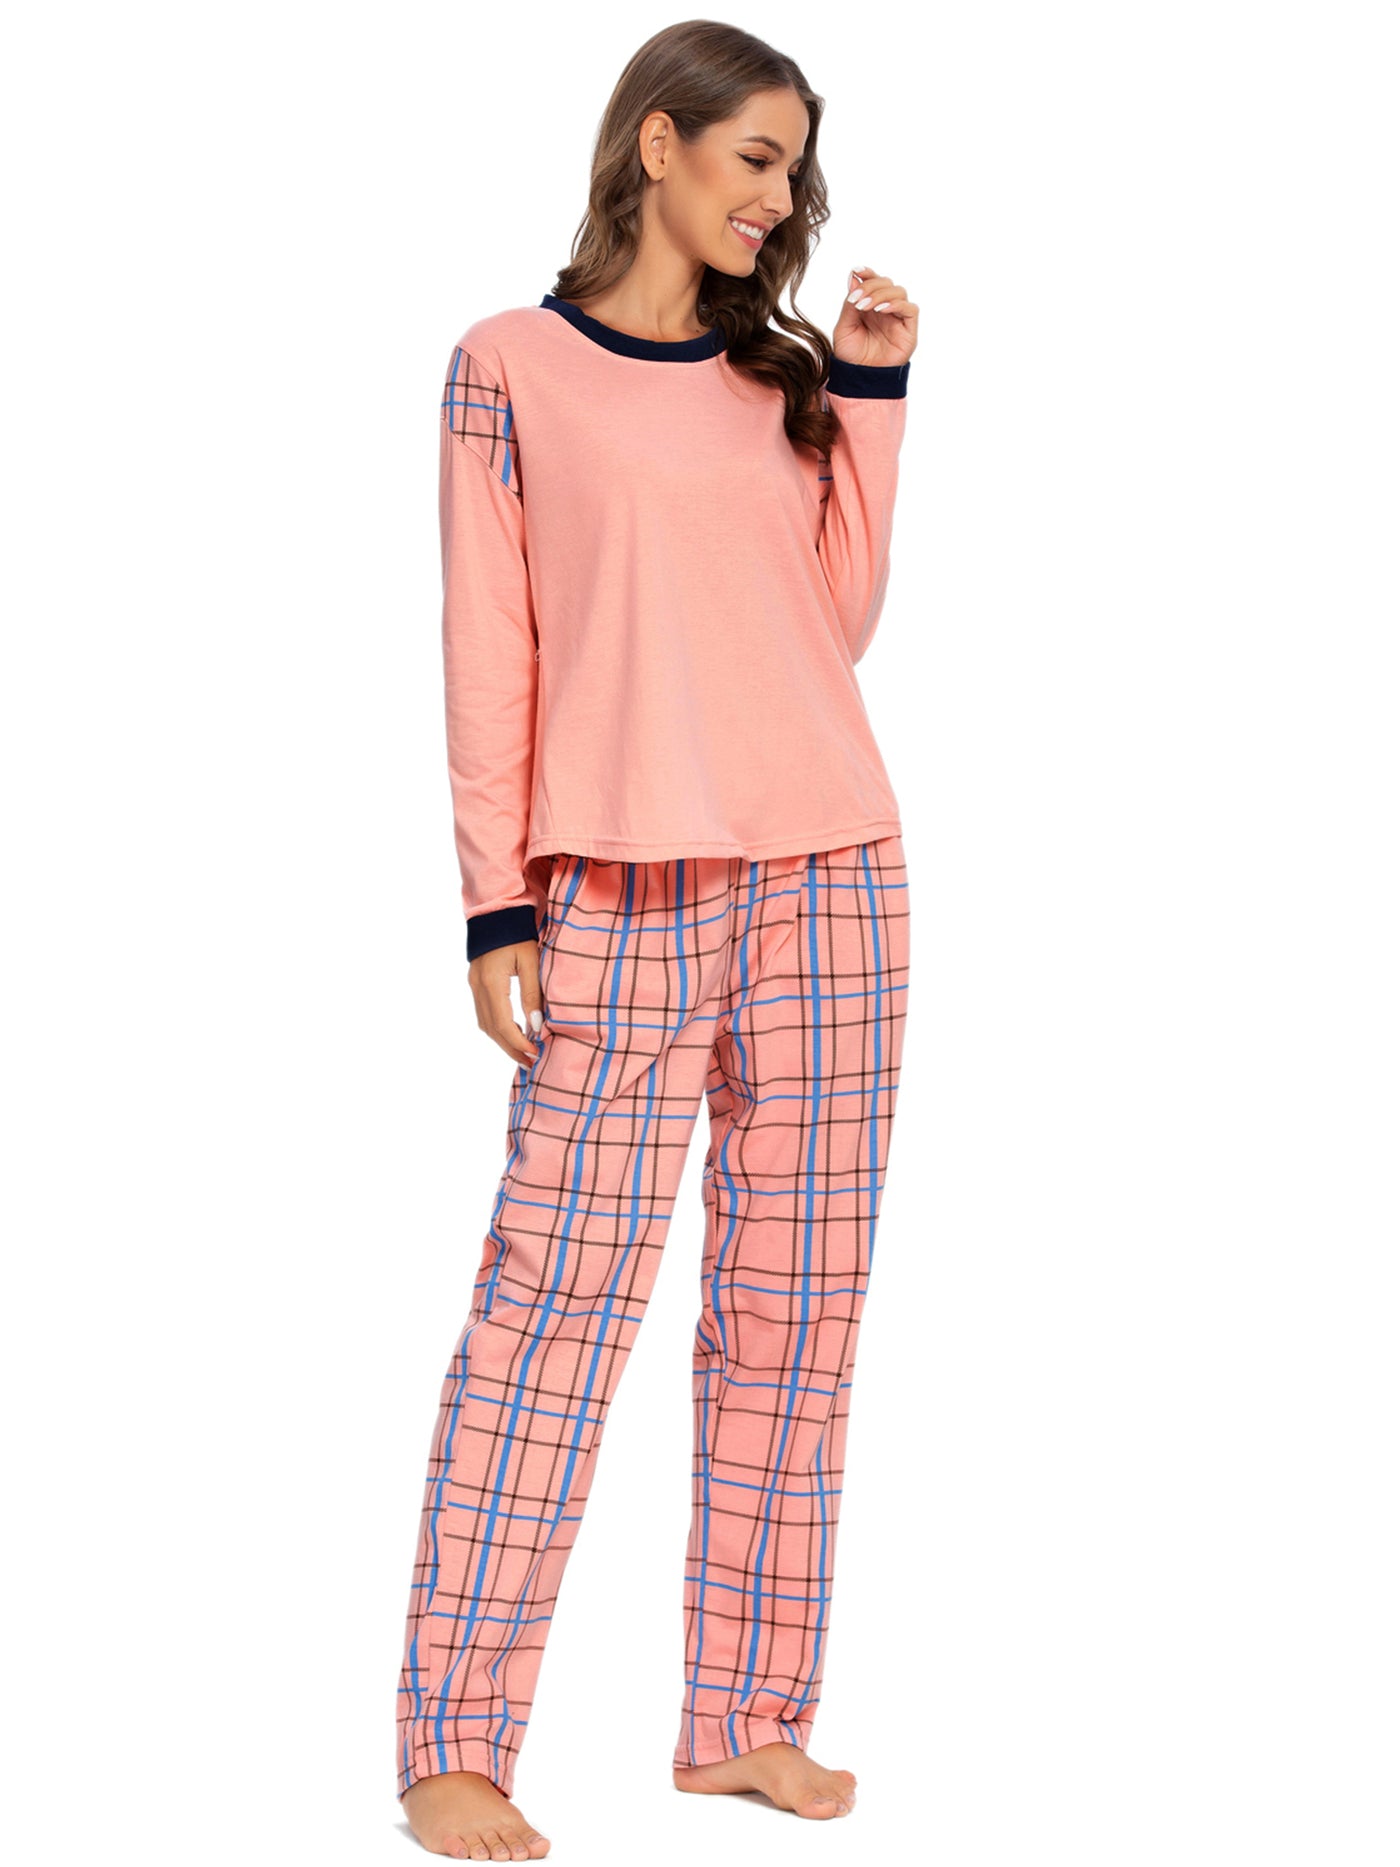 Bublédon Sleepwear Pjs Lounge Round Neck Pants Nightwear Pajama Set